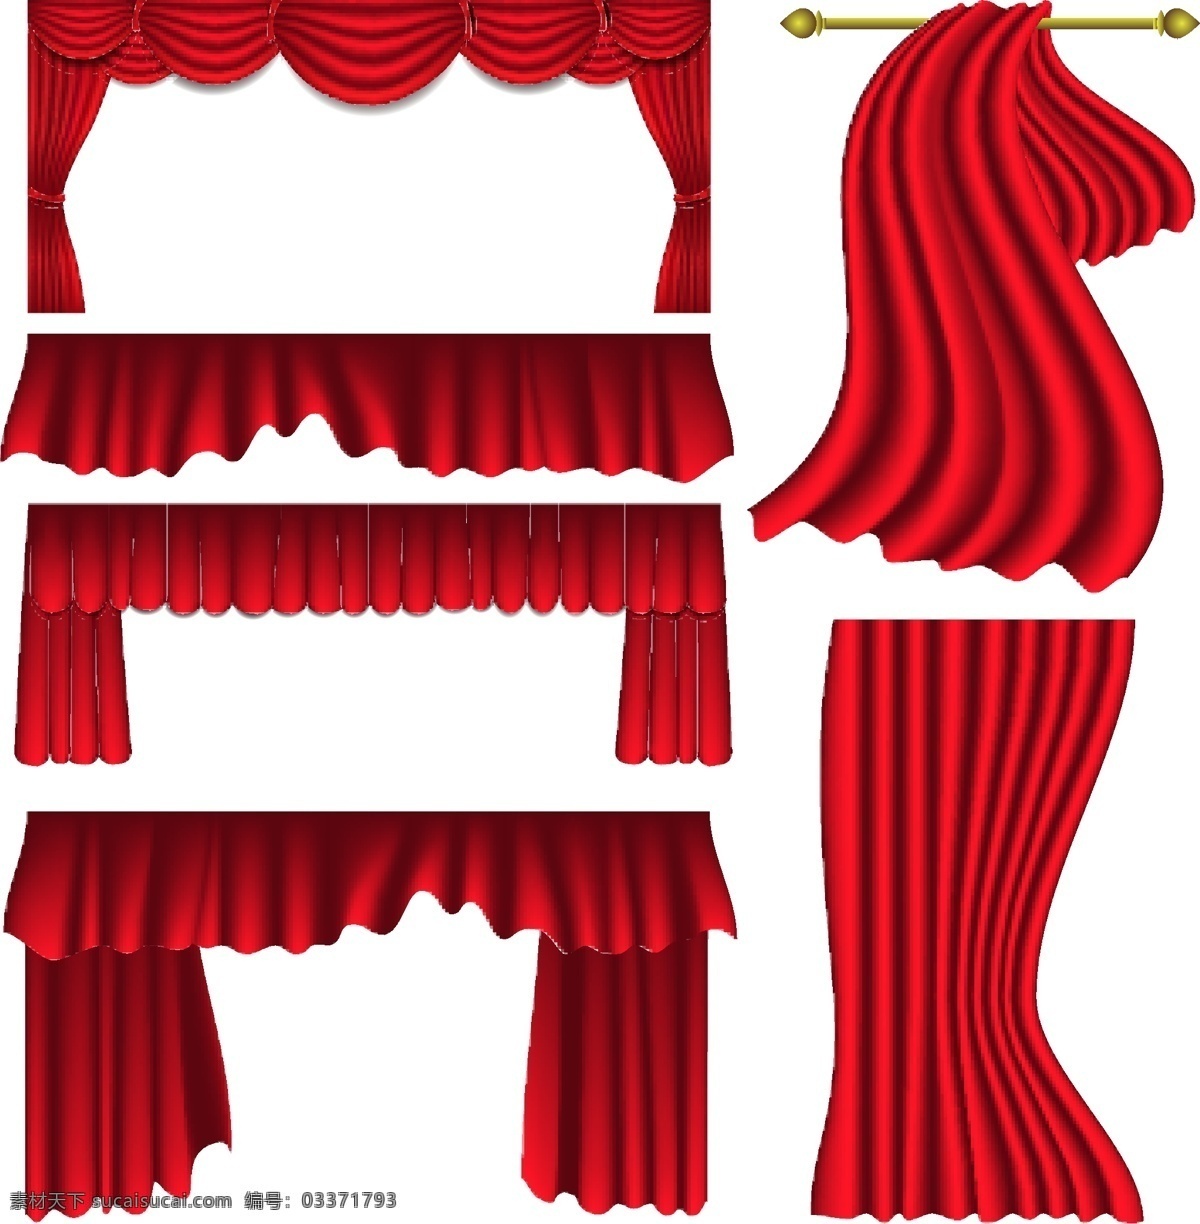 幕 布帘 矢量 红色 幕布帘 样式 矢量素材 设计素材